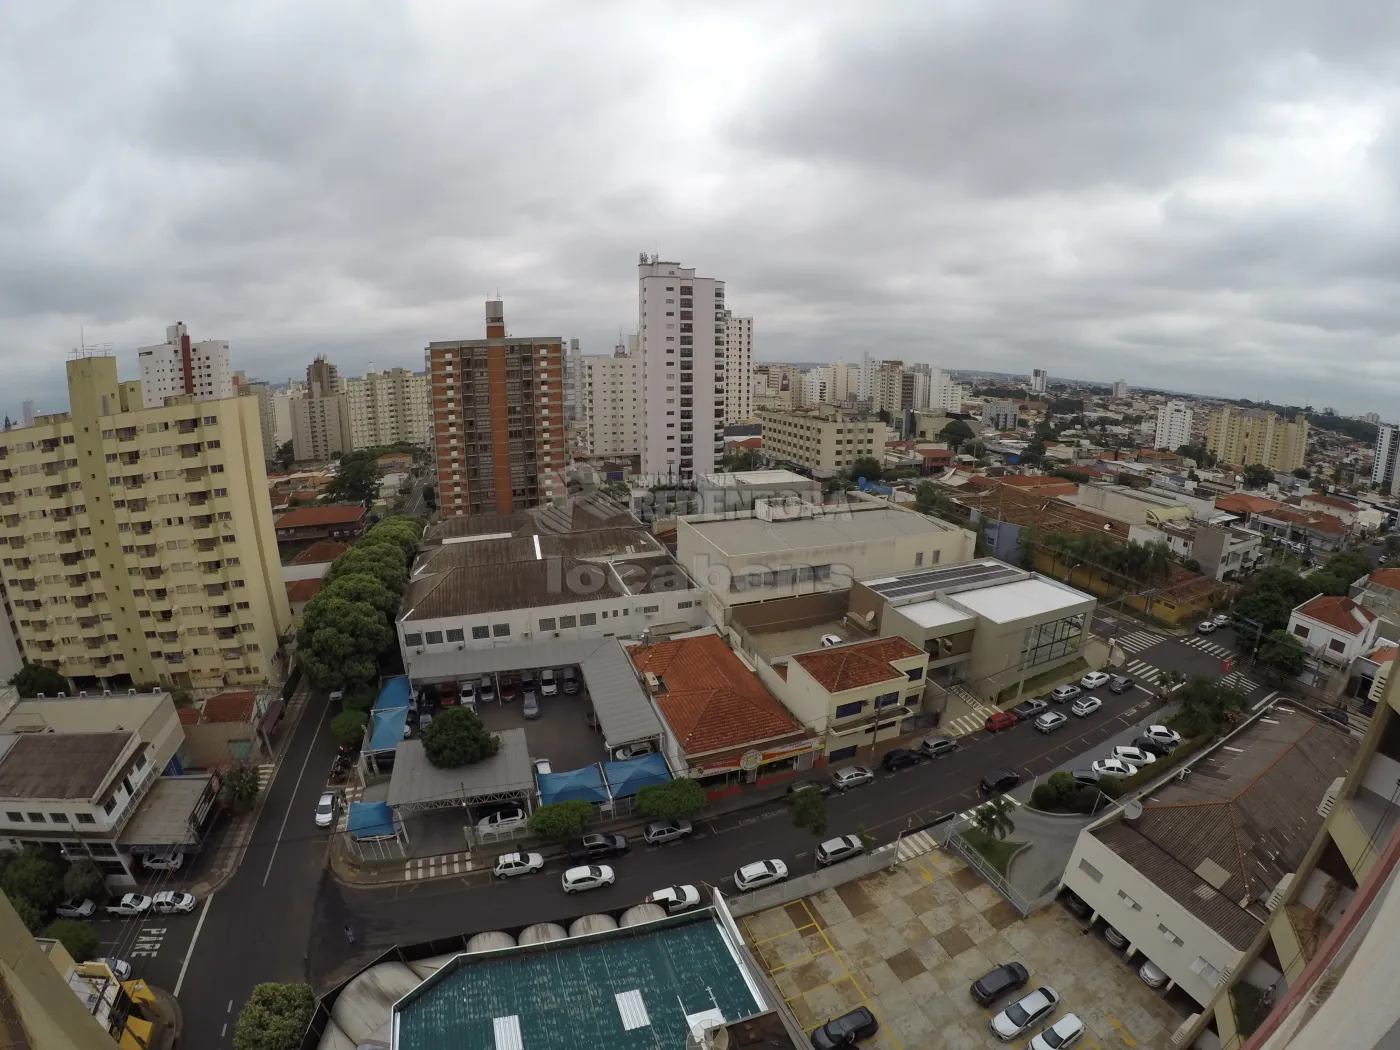 Comprar Apartamento / Padrão em São José do Rio Preto apenas R$ 430.000,00 - Foto 10